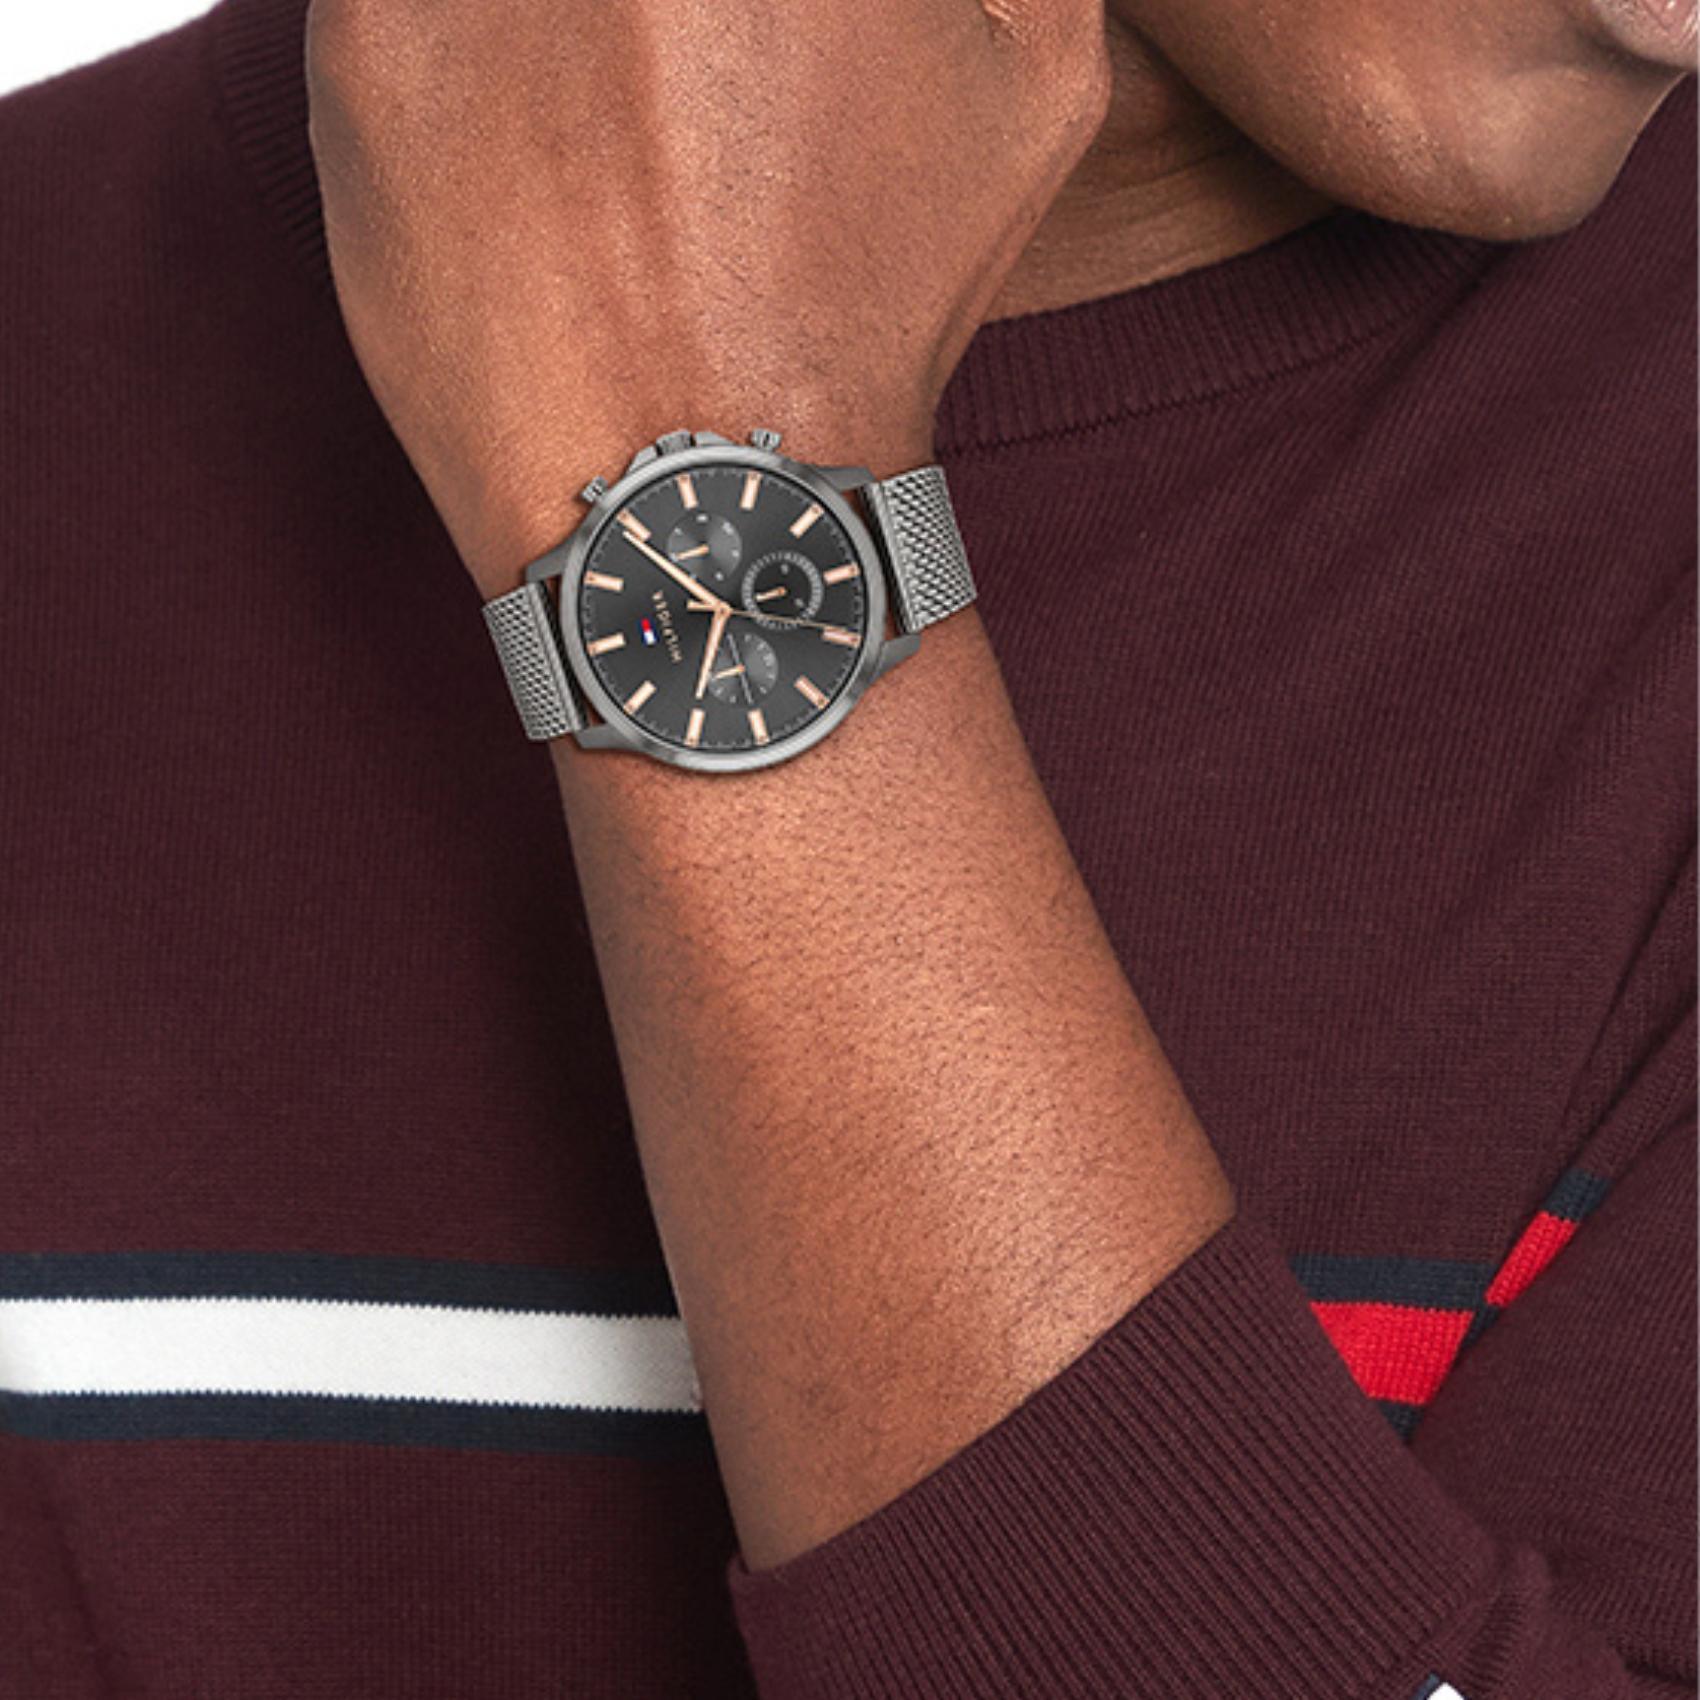 Αντρικό ρολόι Tommy Hilfiger Ryder 1710500 με γκρι ατσάλινο μπρασελέ και γκρι καντράν διαμέτρου 44mm.